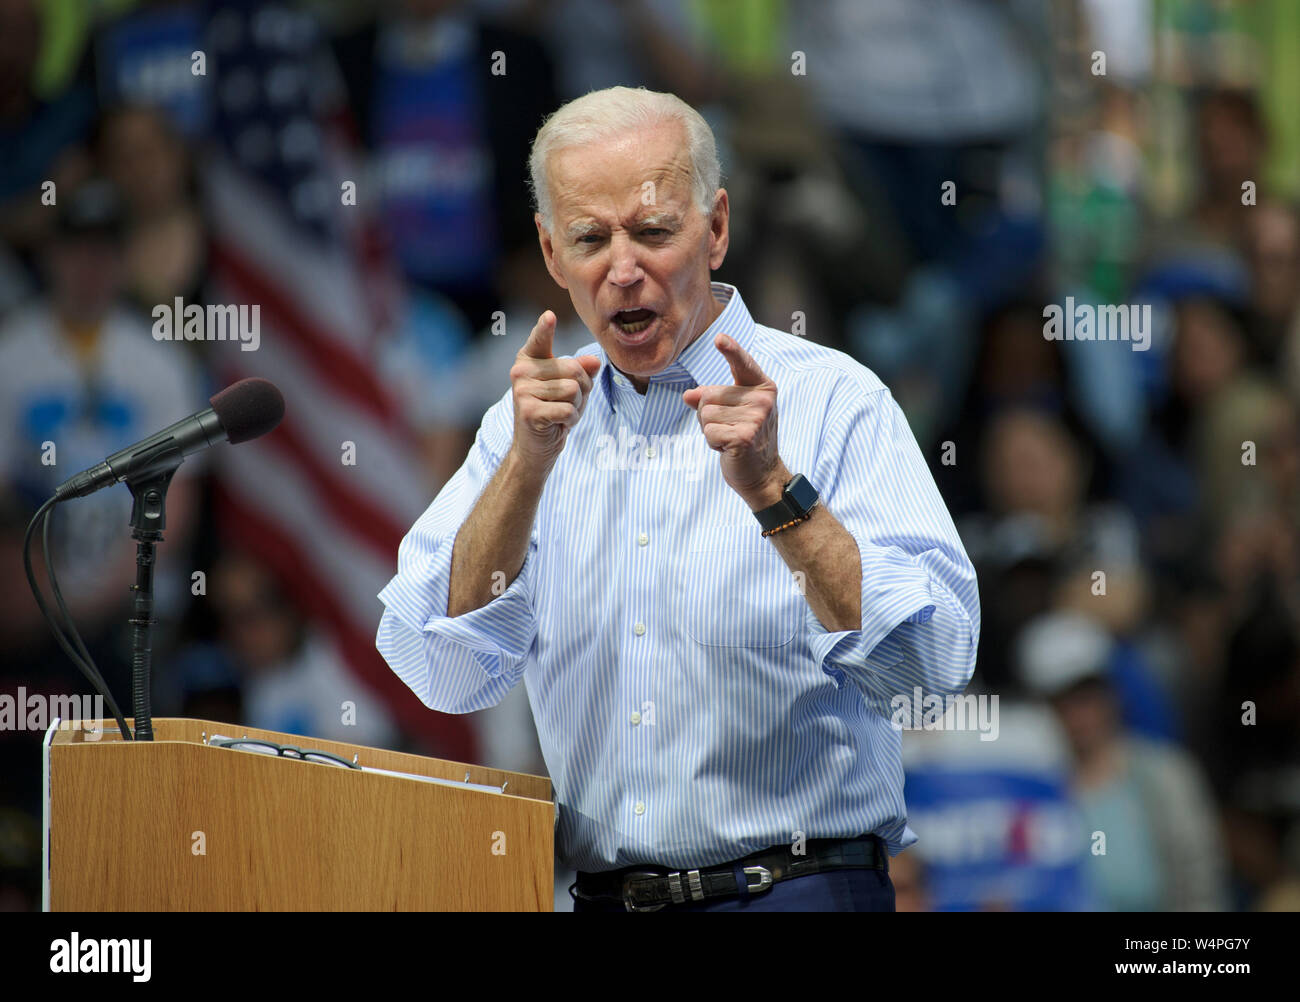 Candidat à l'élection présidentielle 2020 Joe Biden s'affiche lors de son lancement de campagne à ovale Eakins à Philadelphie, Pennsylvanie. Banque D'Images